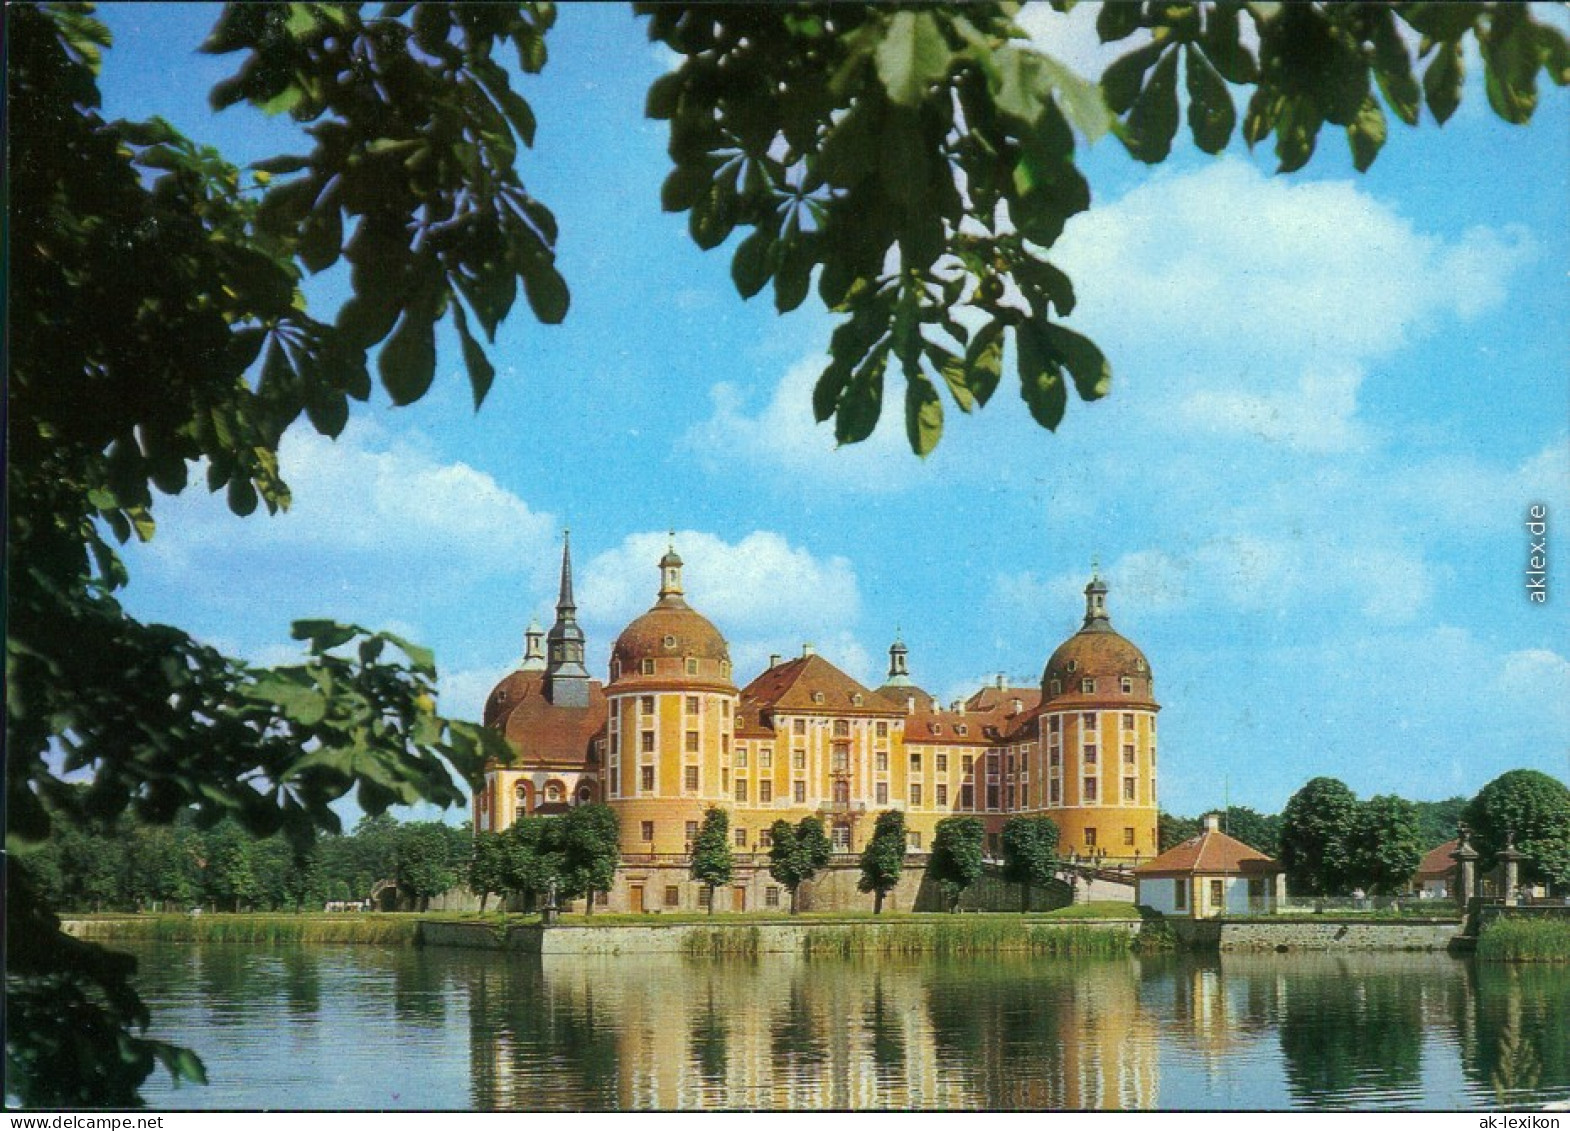 Ansichtskarte Moritzburg Barockmuseum Und Kgl. Jagdschloss 1987 - Moritzburg